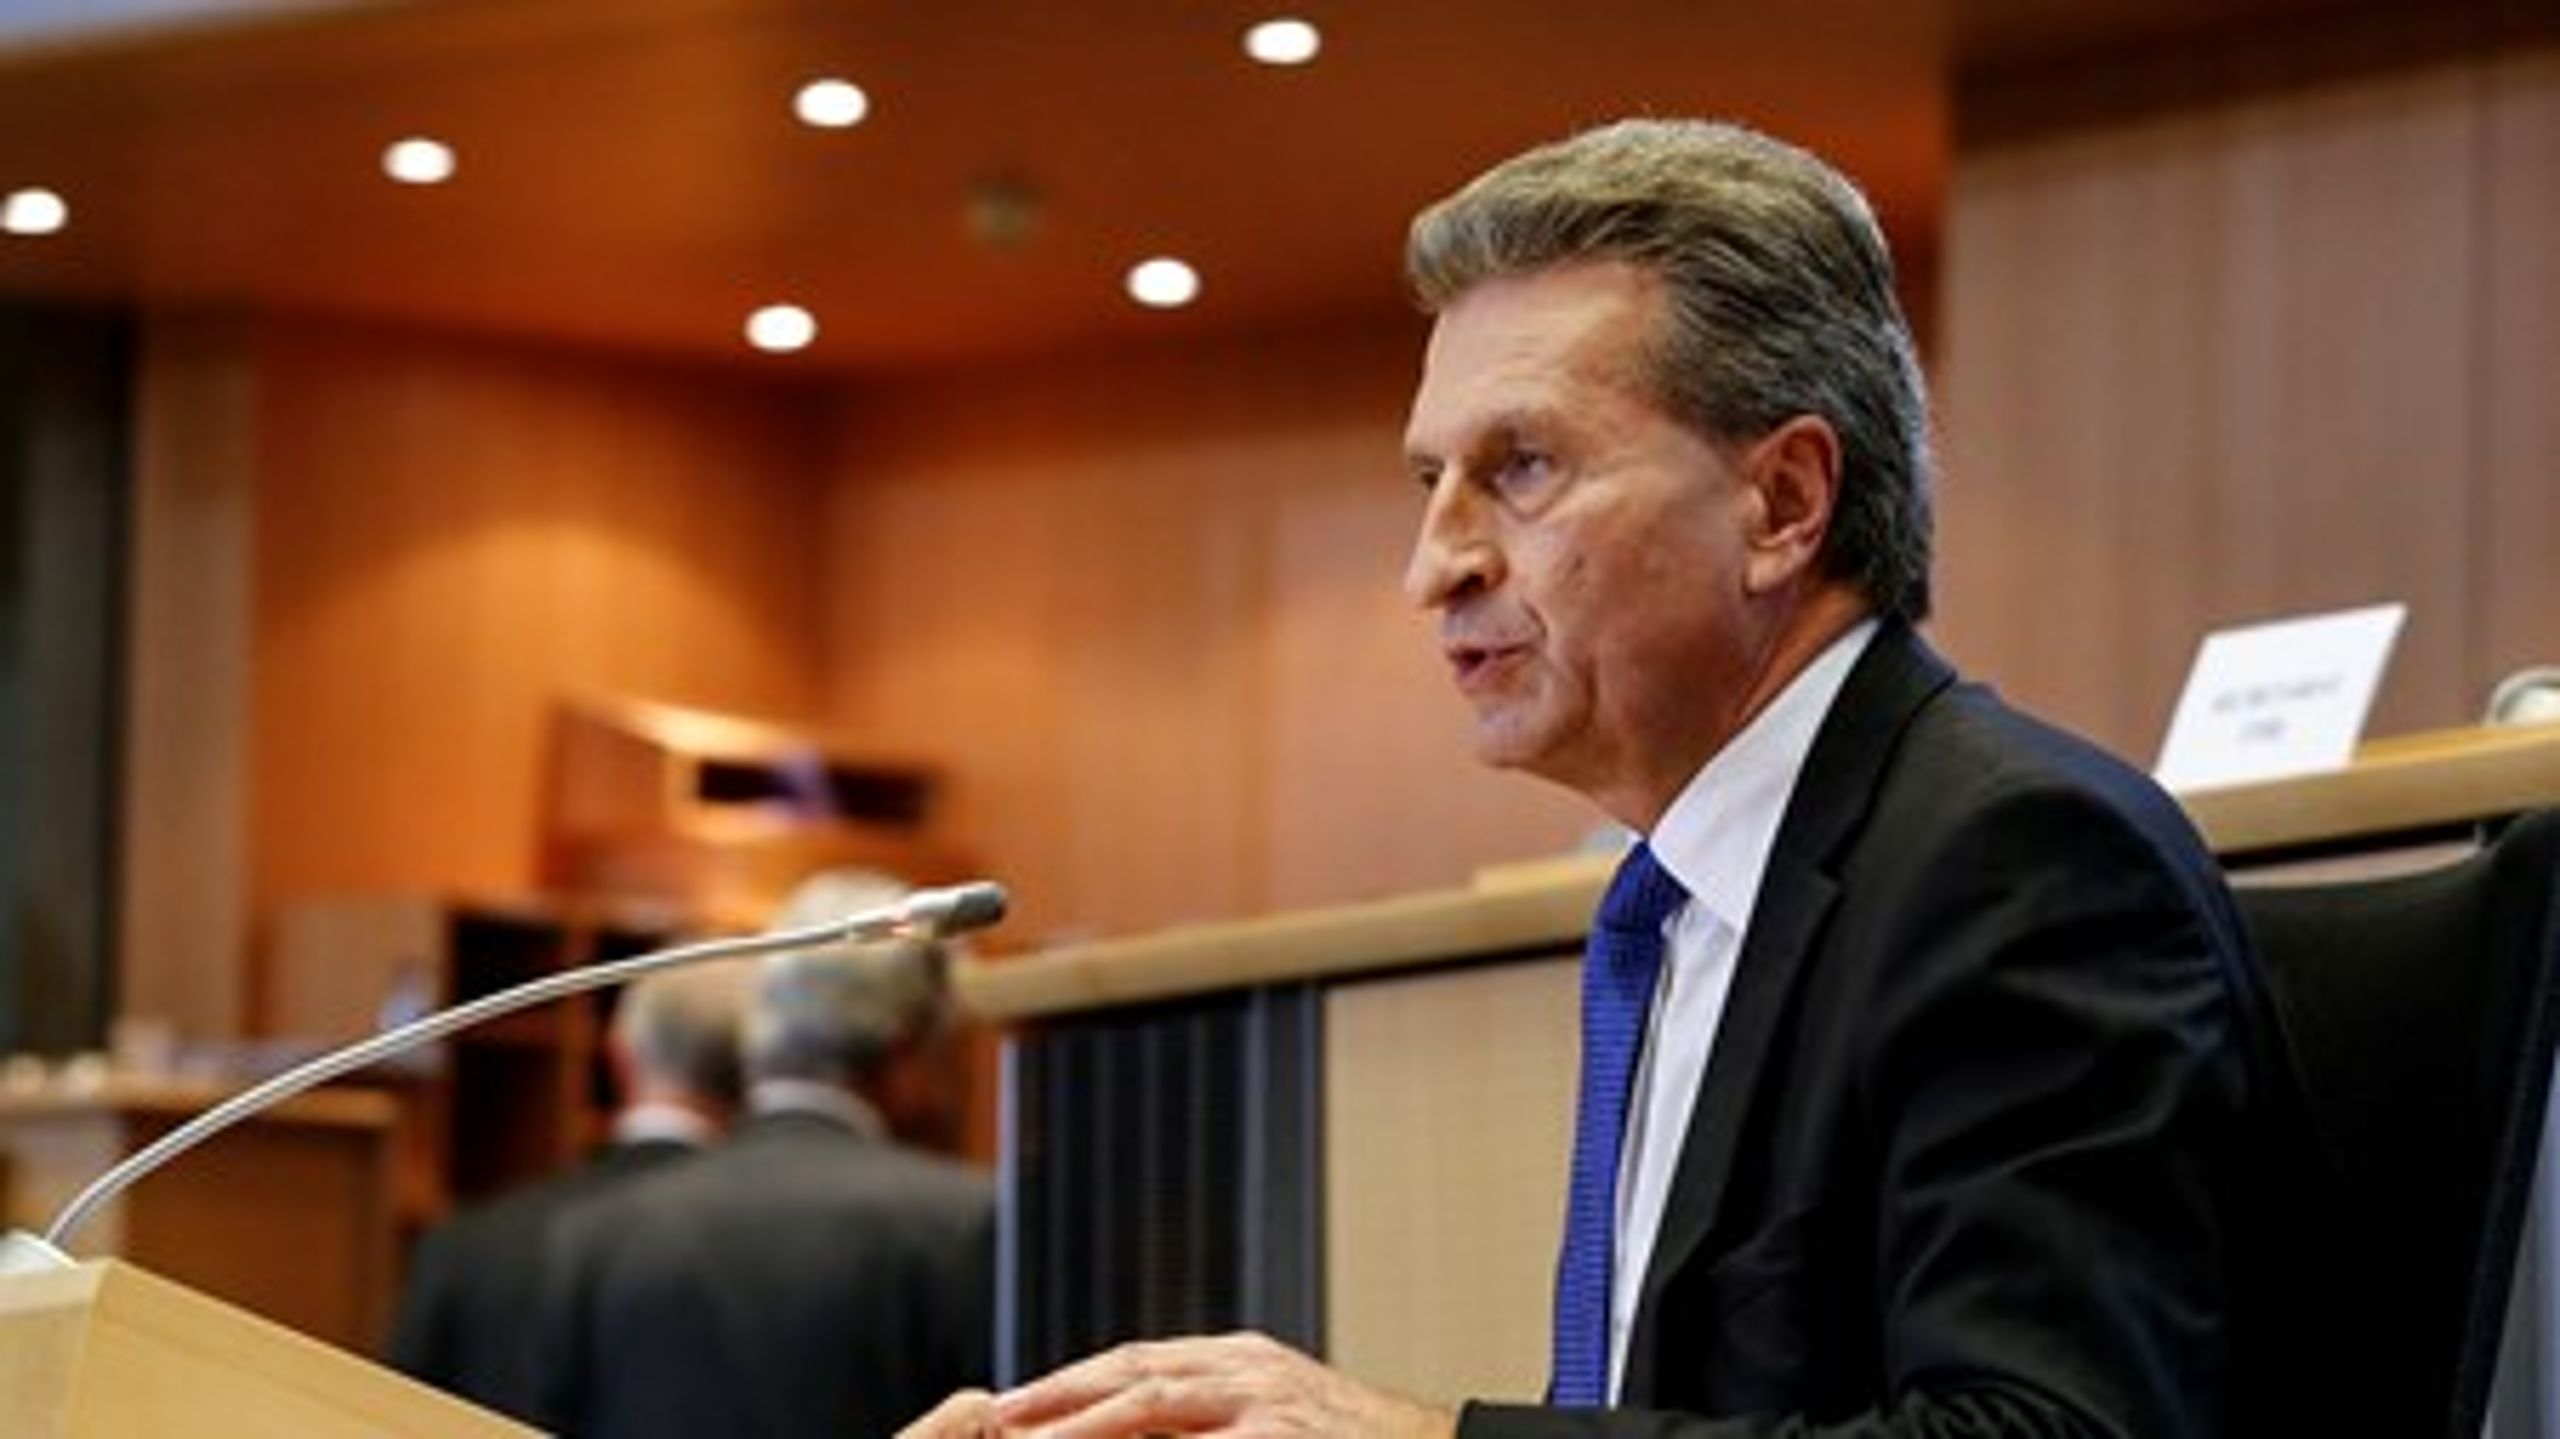 EU's kommissær for den digitale økonomi, Günther Oettinger, spiller en nøglerolle i nye regler for ophavsret.